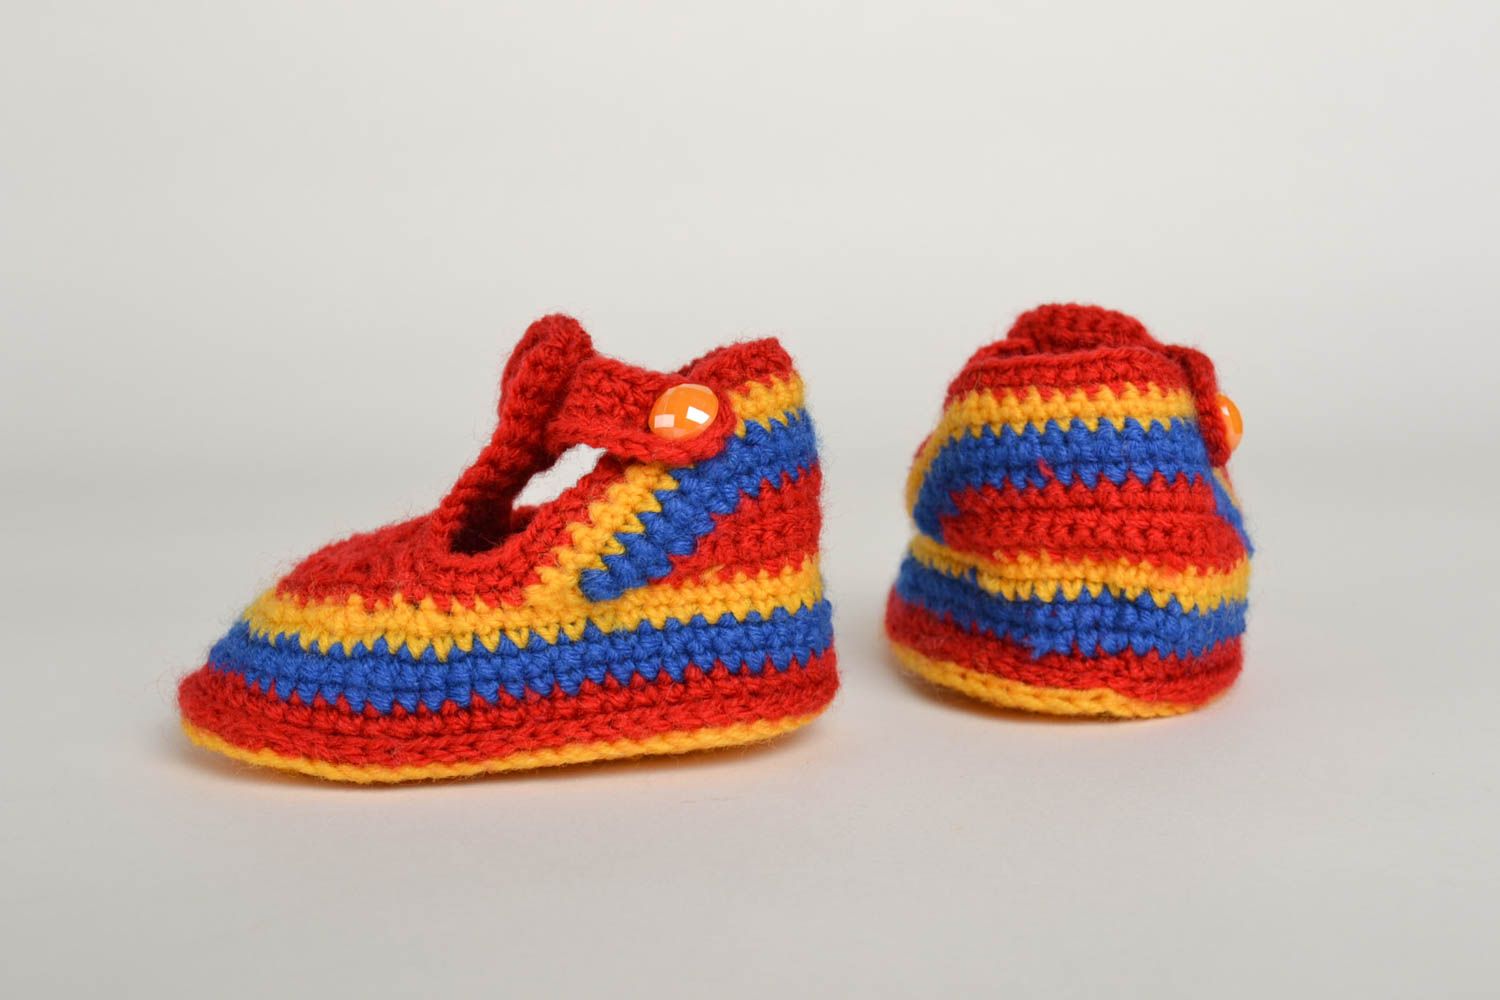 Unusual handmade crochet baby booties warm baby booties baby accessories photo 3